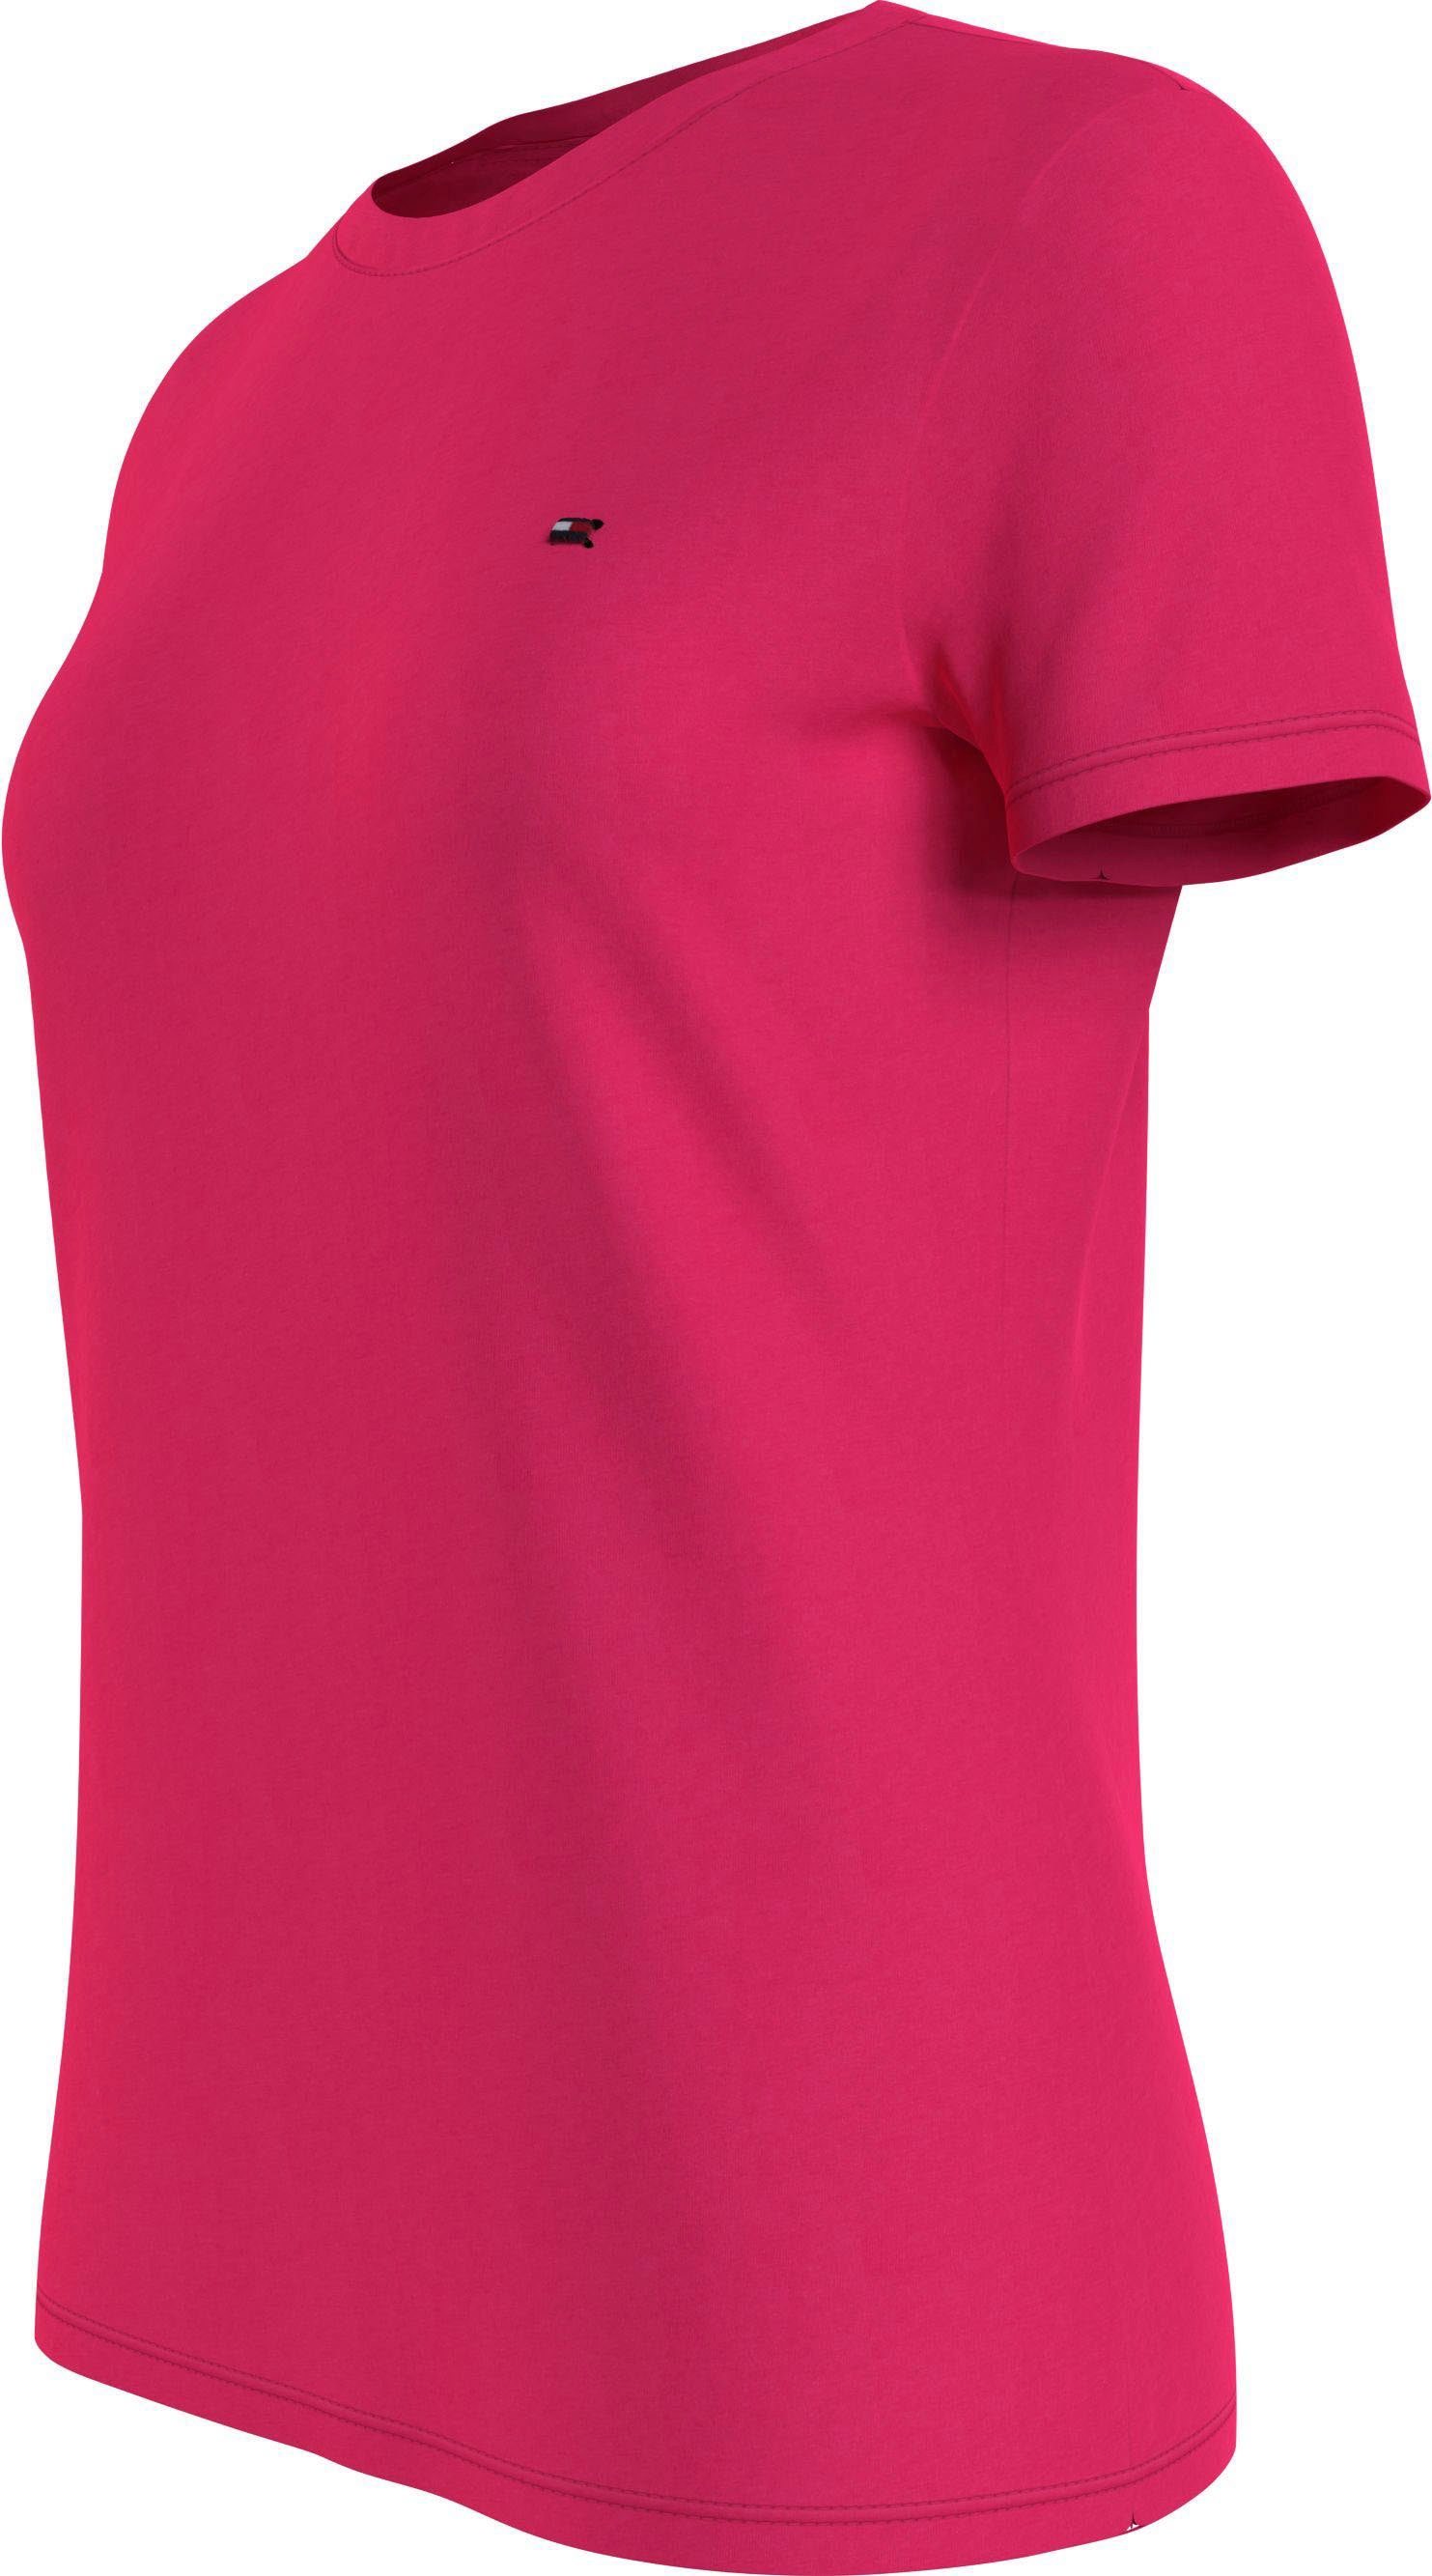 Markenlabel Tommy TEE Hilfiger Tommy Hilfiger mit NECK CREW NEW Pink-Splendor T-Shirt